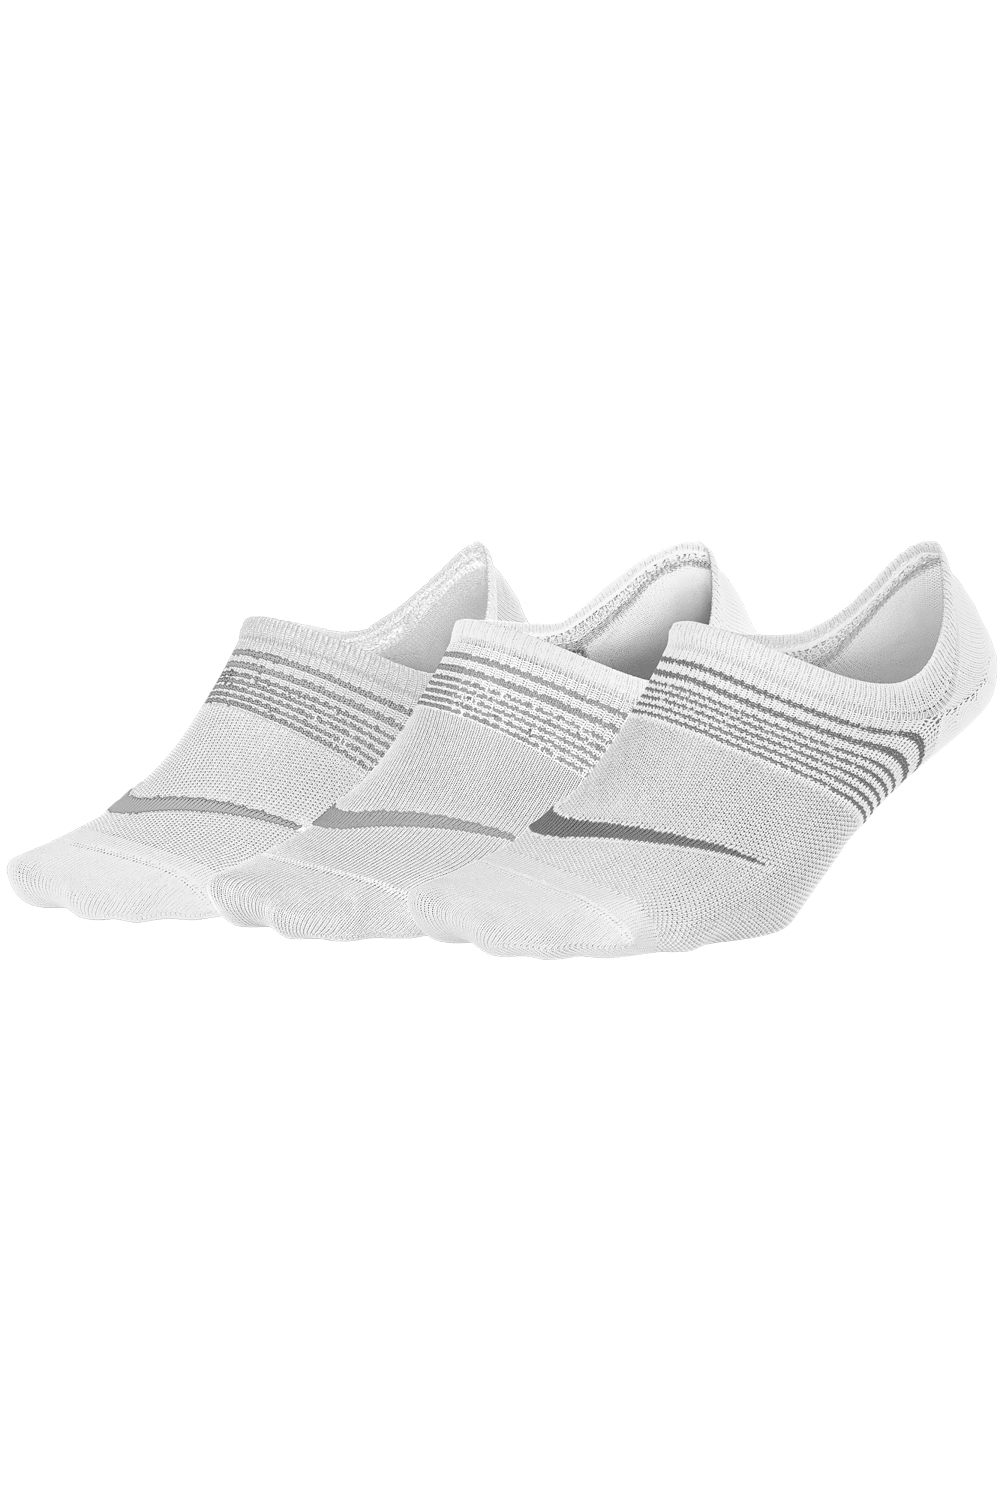 NIKE – Σετ γυναικείες αθλητικές κάλτσες Nike EVERYDAY LTWT FOOT λευκές 1468891.1-9100